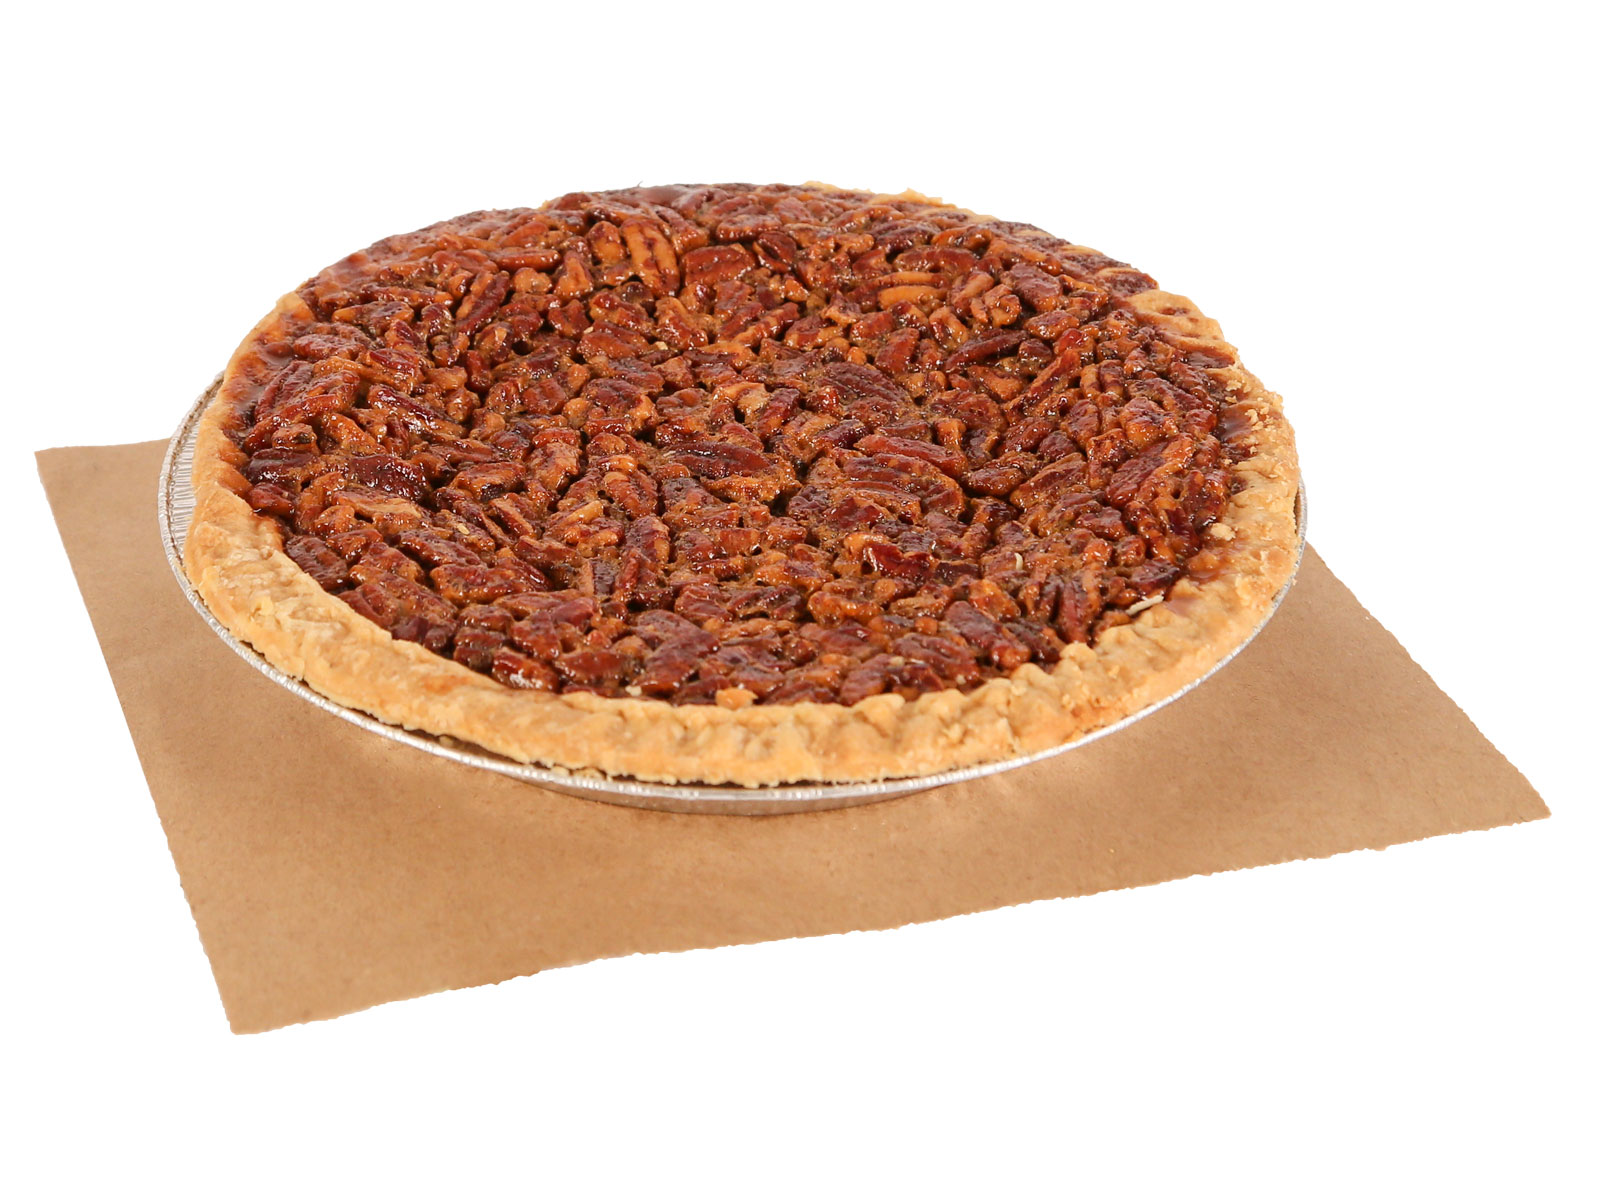 Whole pecan pie